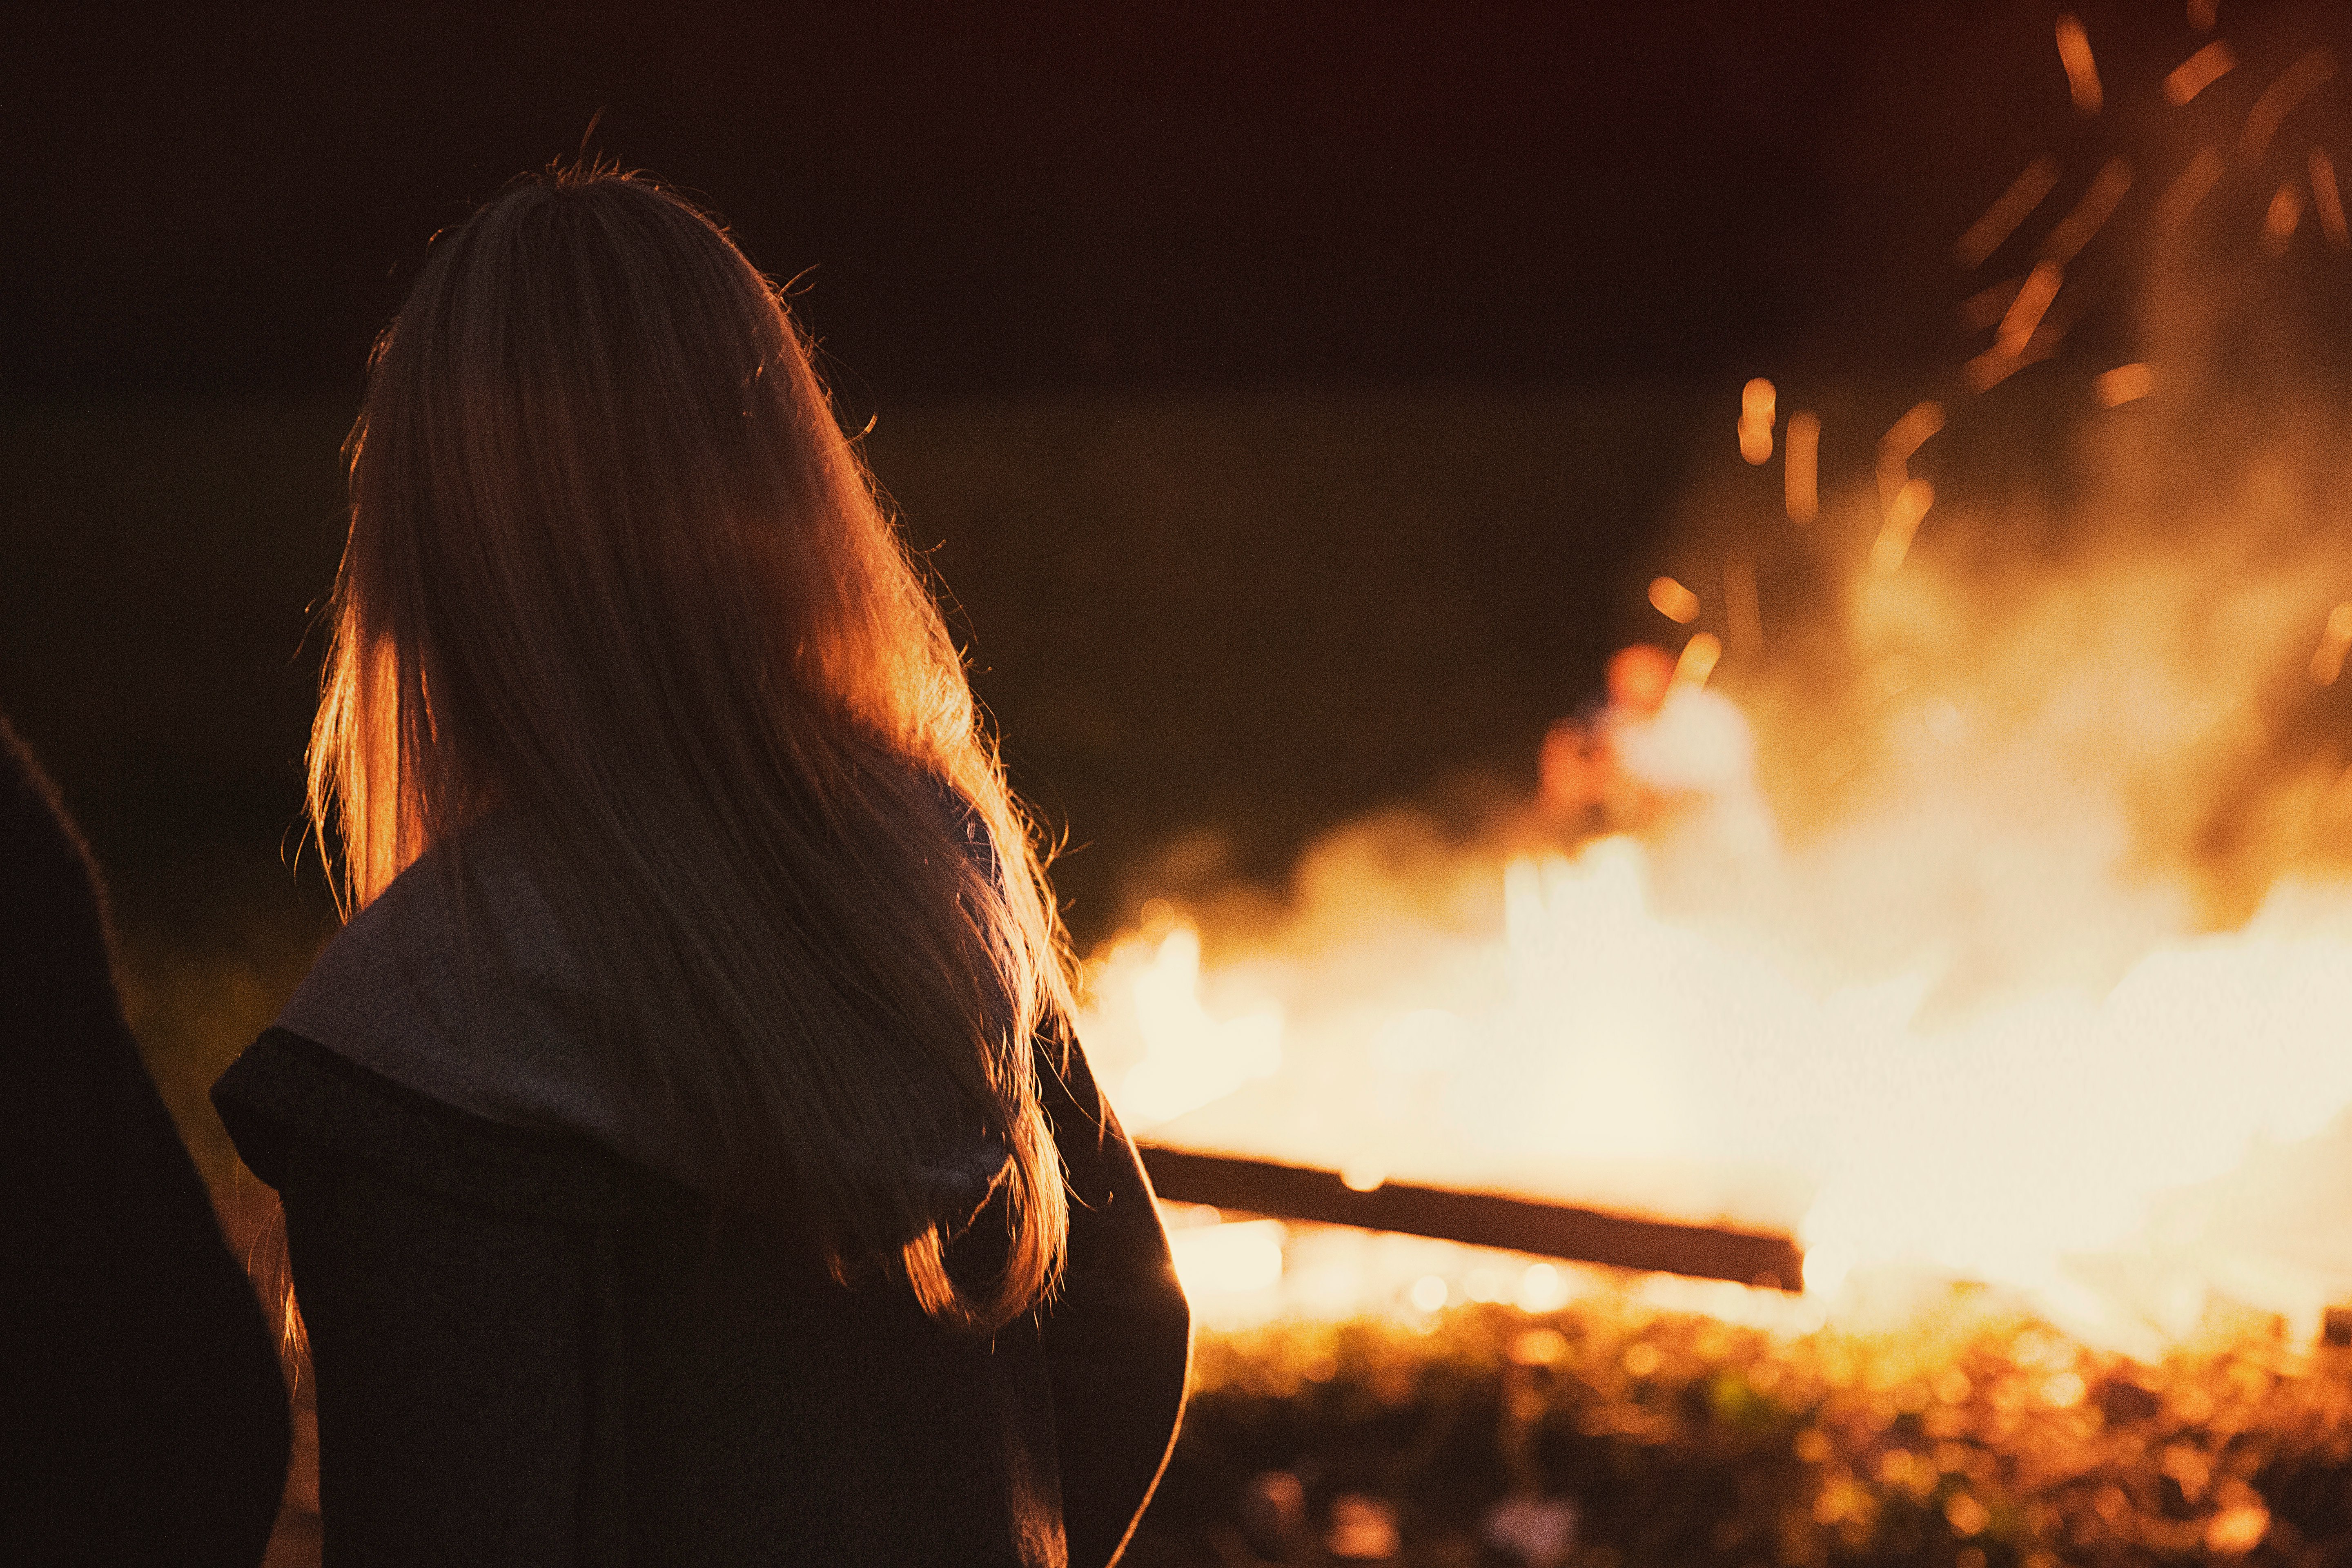 woman beside fire